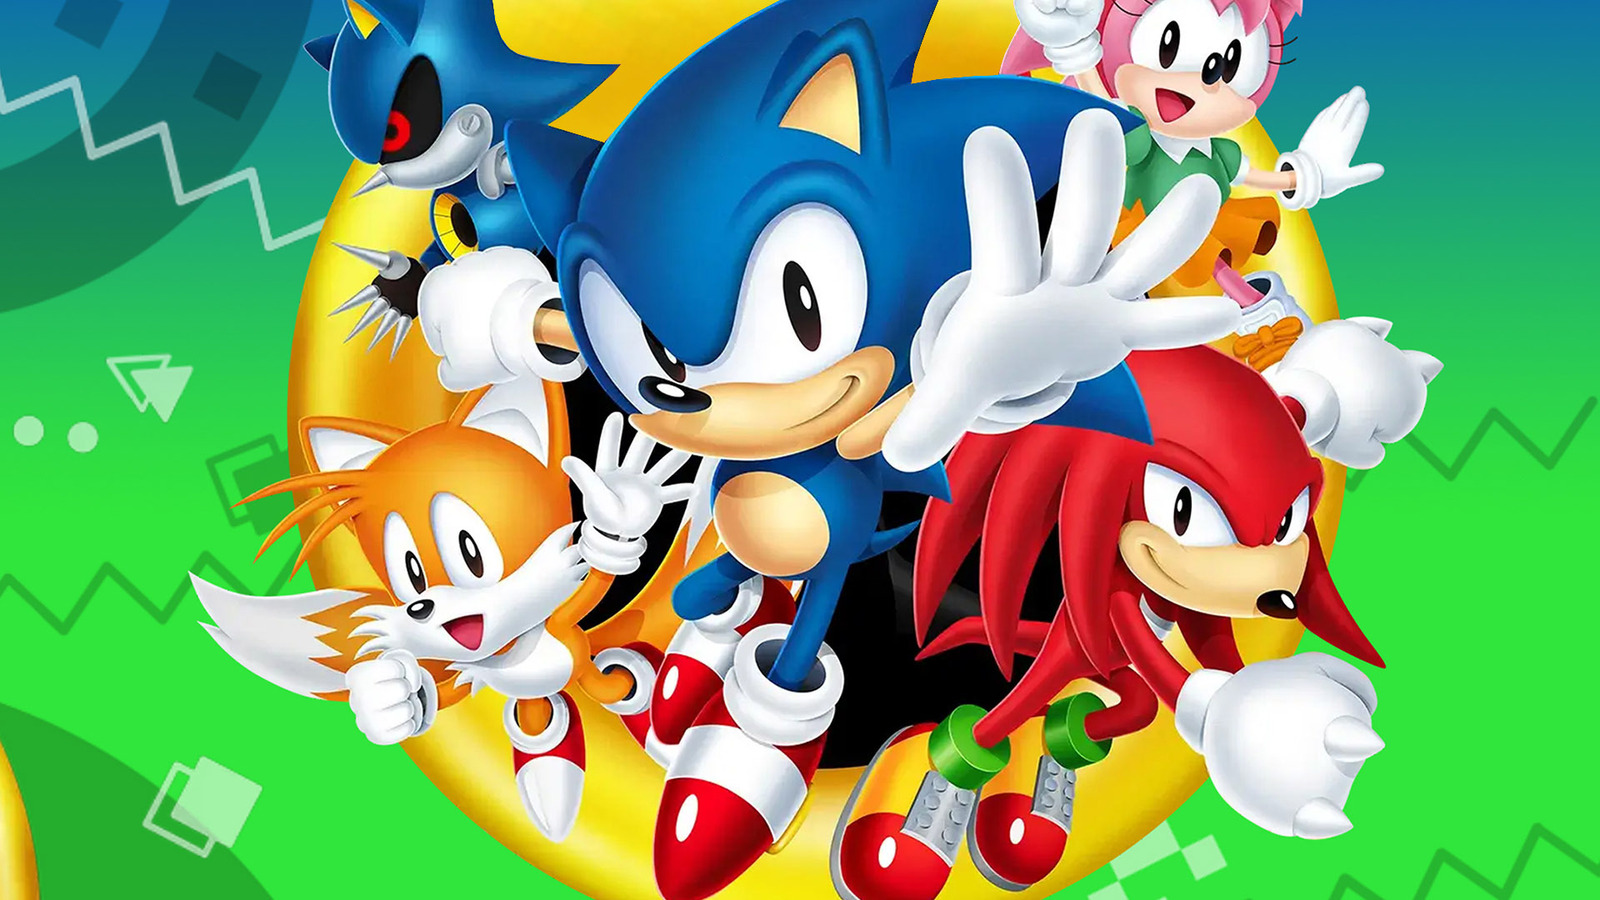 مشکلات بازی Sonic Origins